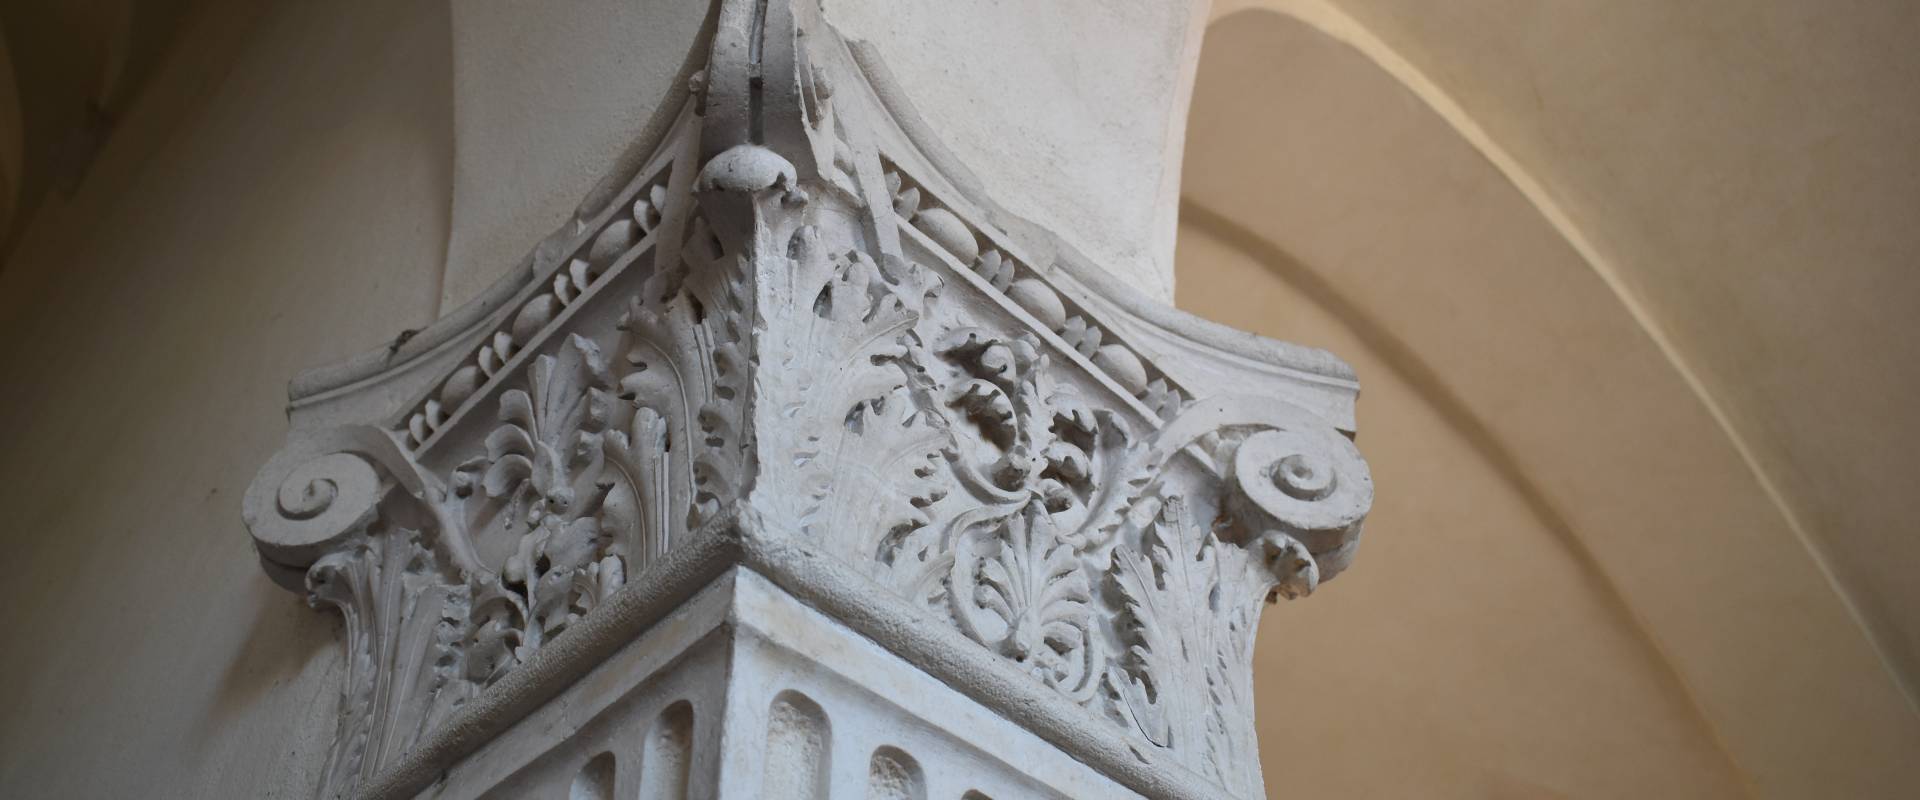 Palazzo Costabili (Ferrara) - capitello scalone foto di Nicola Quirico